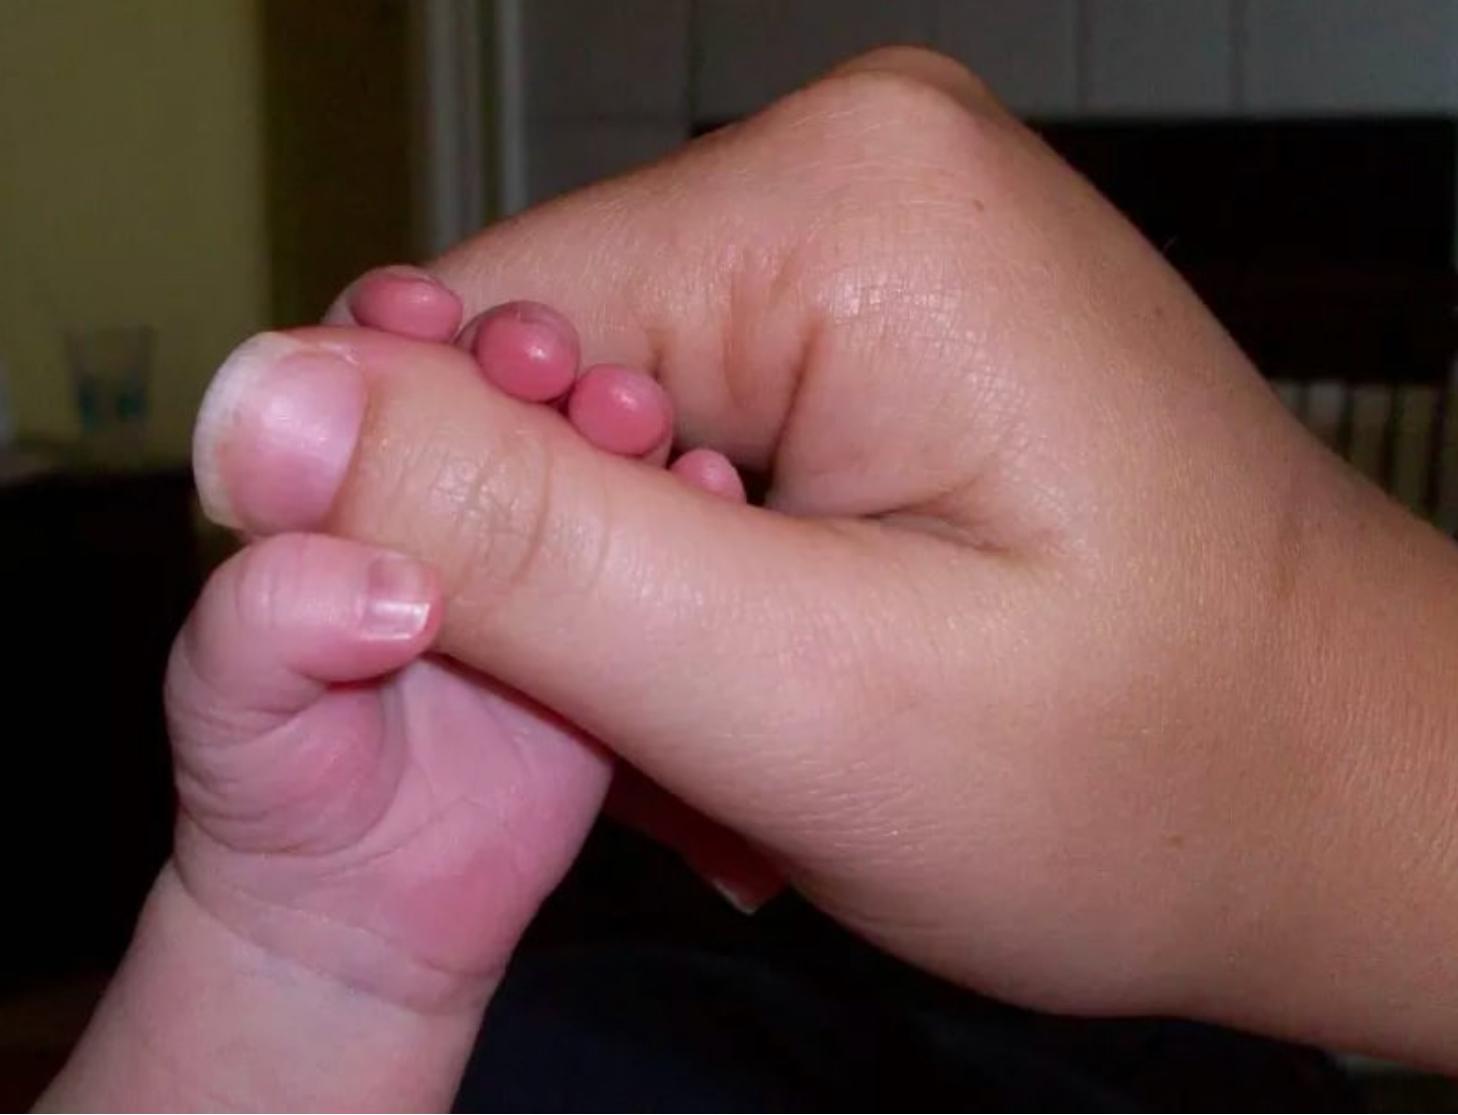 На рост на пальце руки. Большие пальцы на руках широкие. Маленький ноготь на большом пальце. Широкий ноготь на большом пальце.